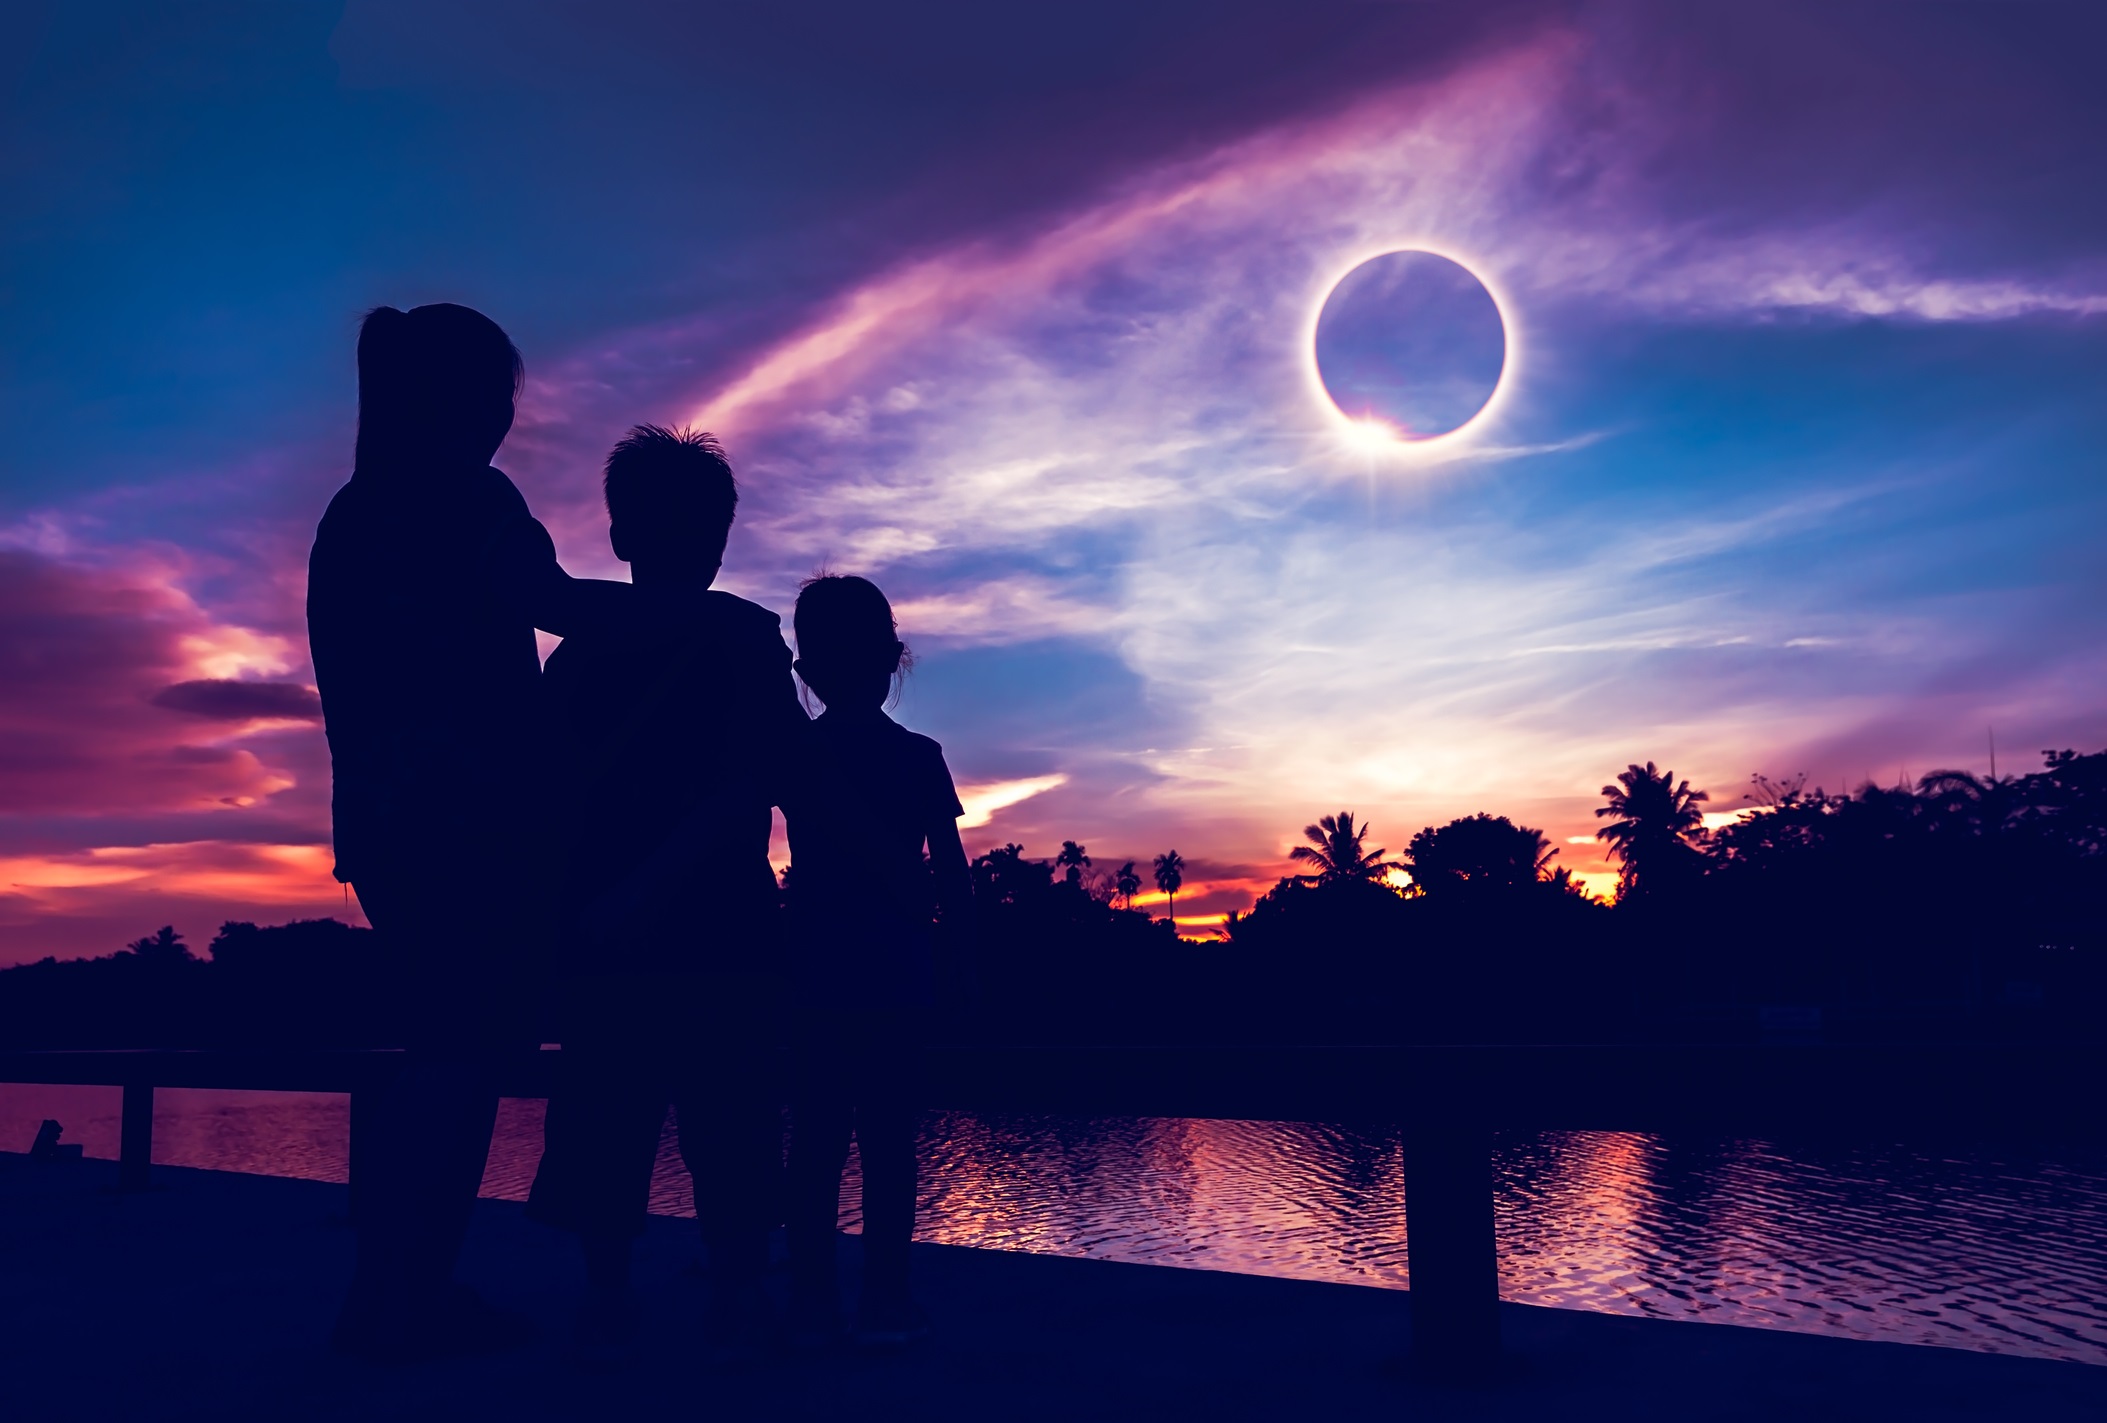 Eclipse do apocalipse? 10 teorias da conspiração que estão dominando a web